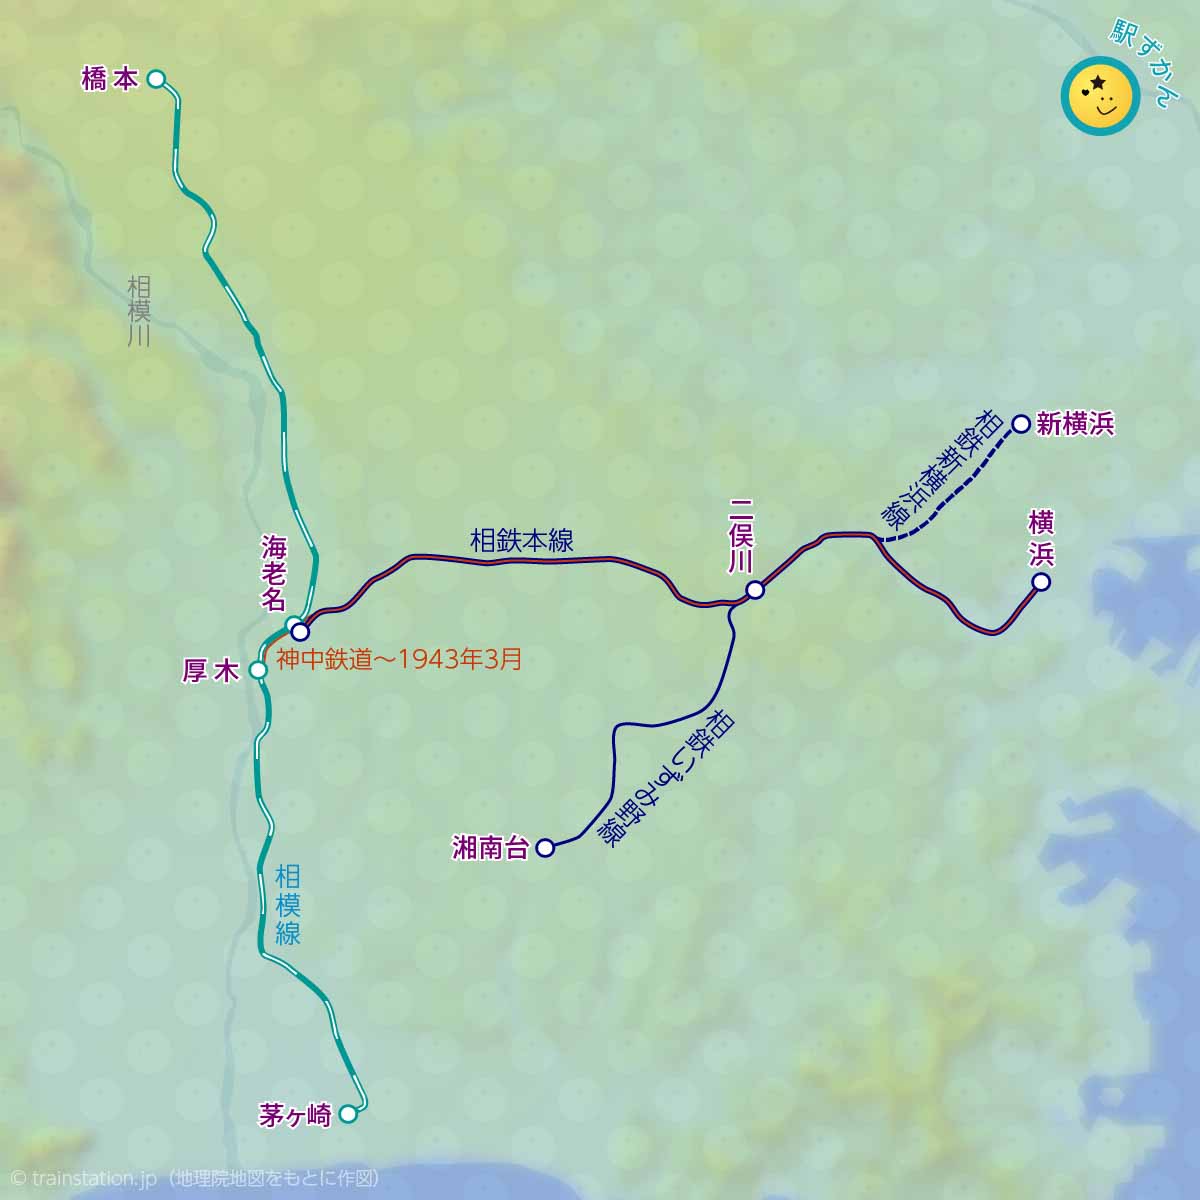 相鉄線(神中鉄道)と相模線の路線図